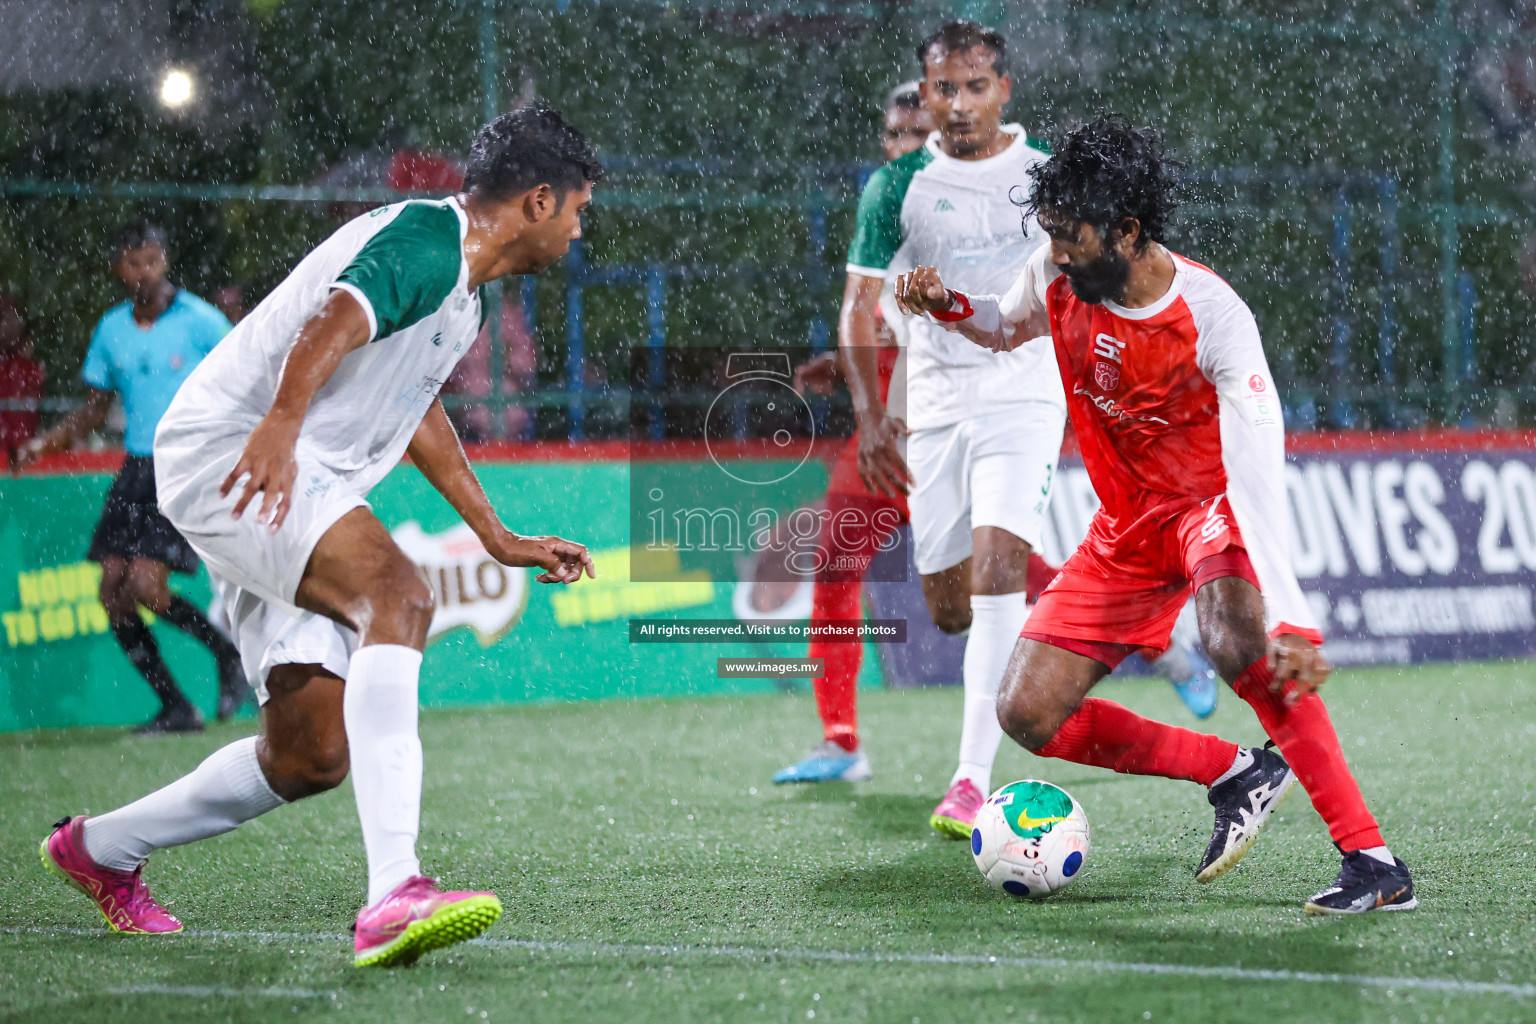 Maldivian vs Baros Maldives in Club Maldives Cup 2023 held in Hulhumale, Maldives, on Thursday, 20th July 2023 Photos: Nausham waheed / images.mv